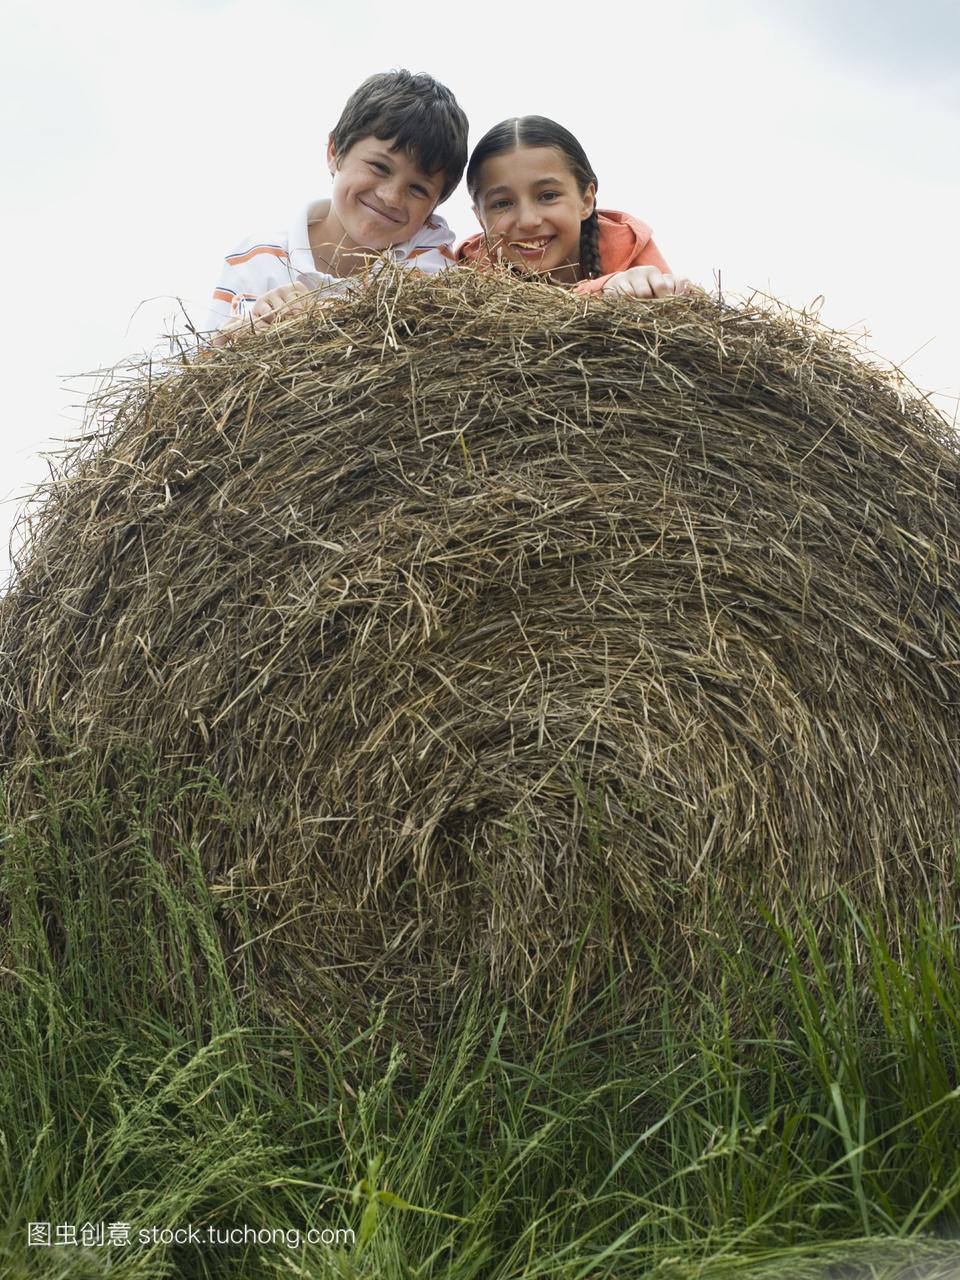 一个男孩和一个女孩躺在草堆上的画像